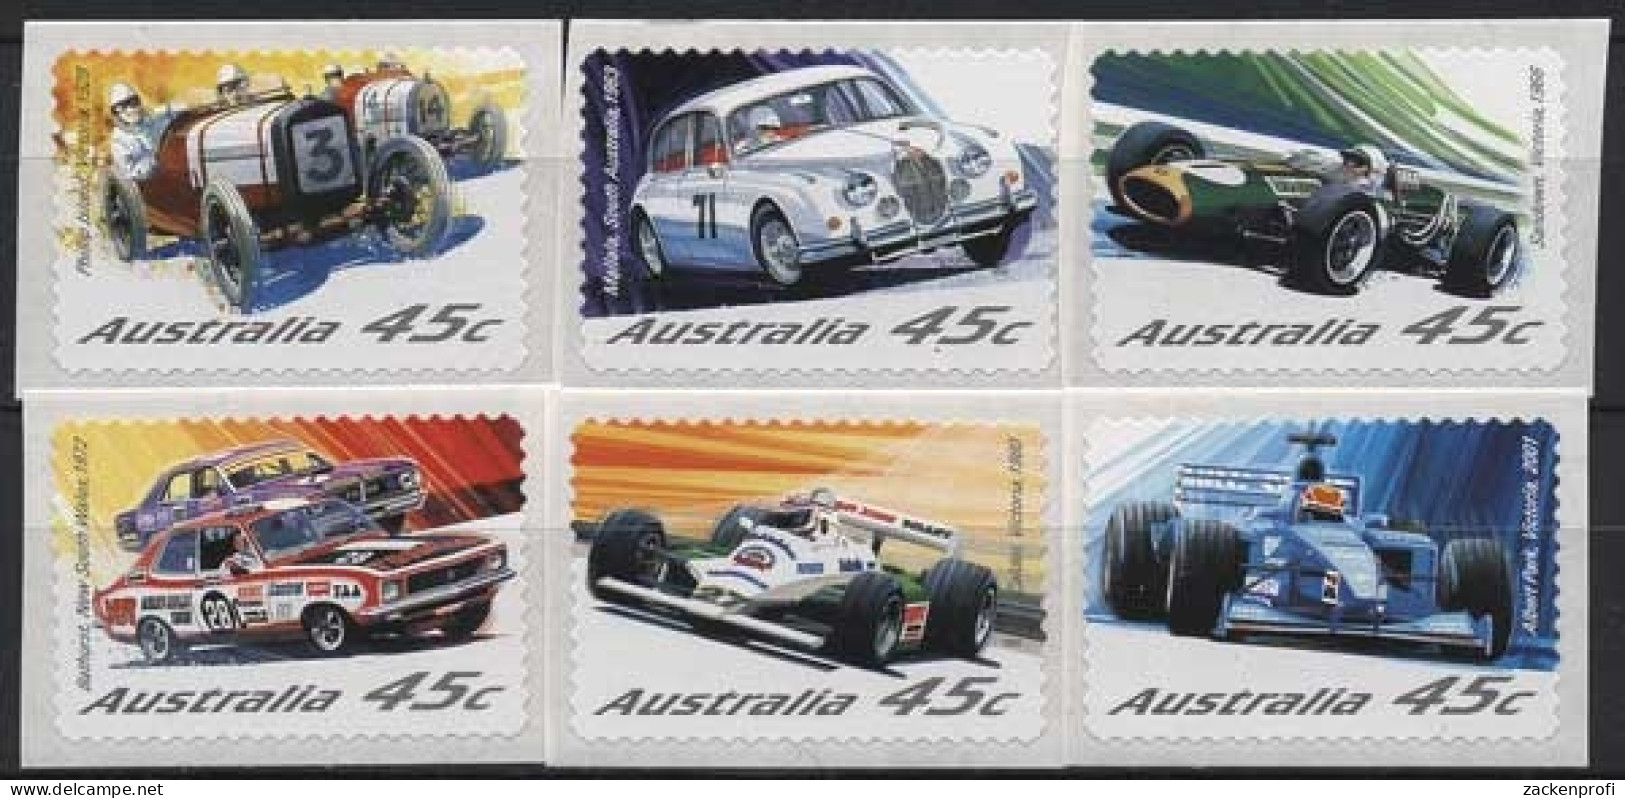 Australien 2002 Automobilrennsport 2119/24 Postfrisch - Nuevos